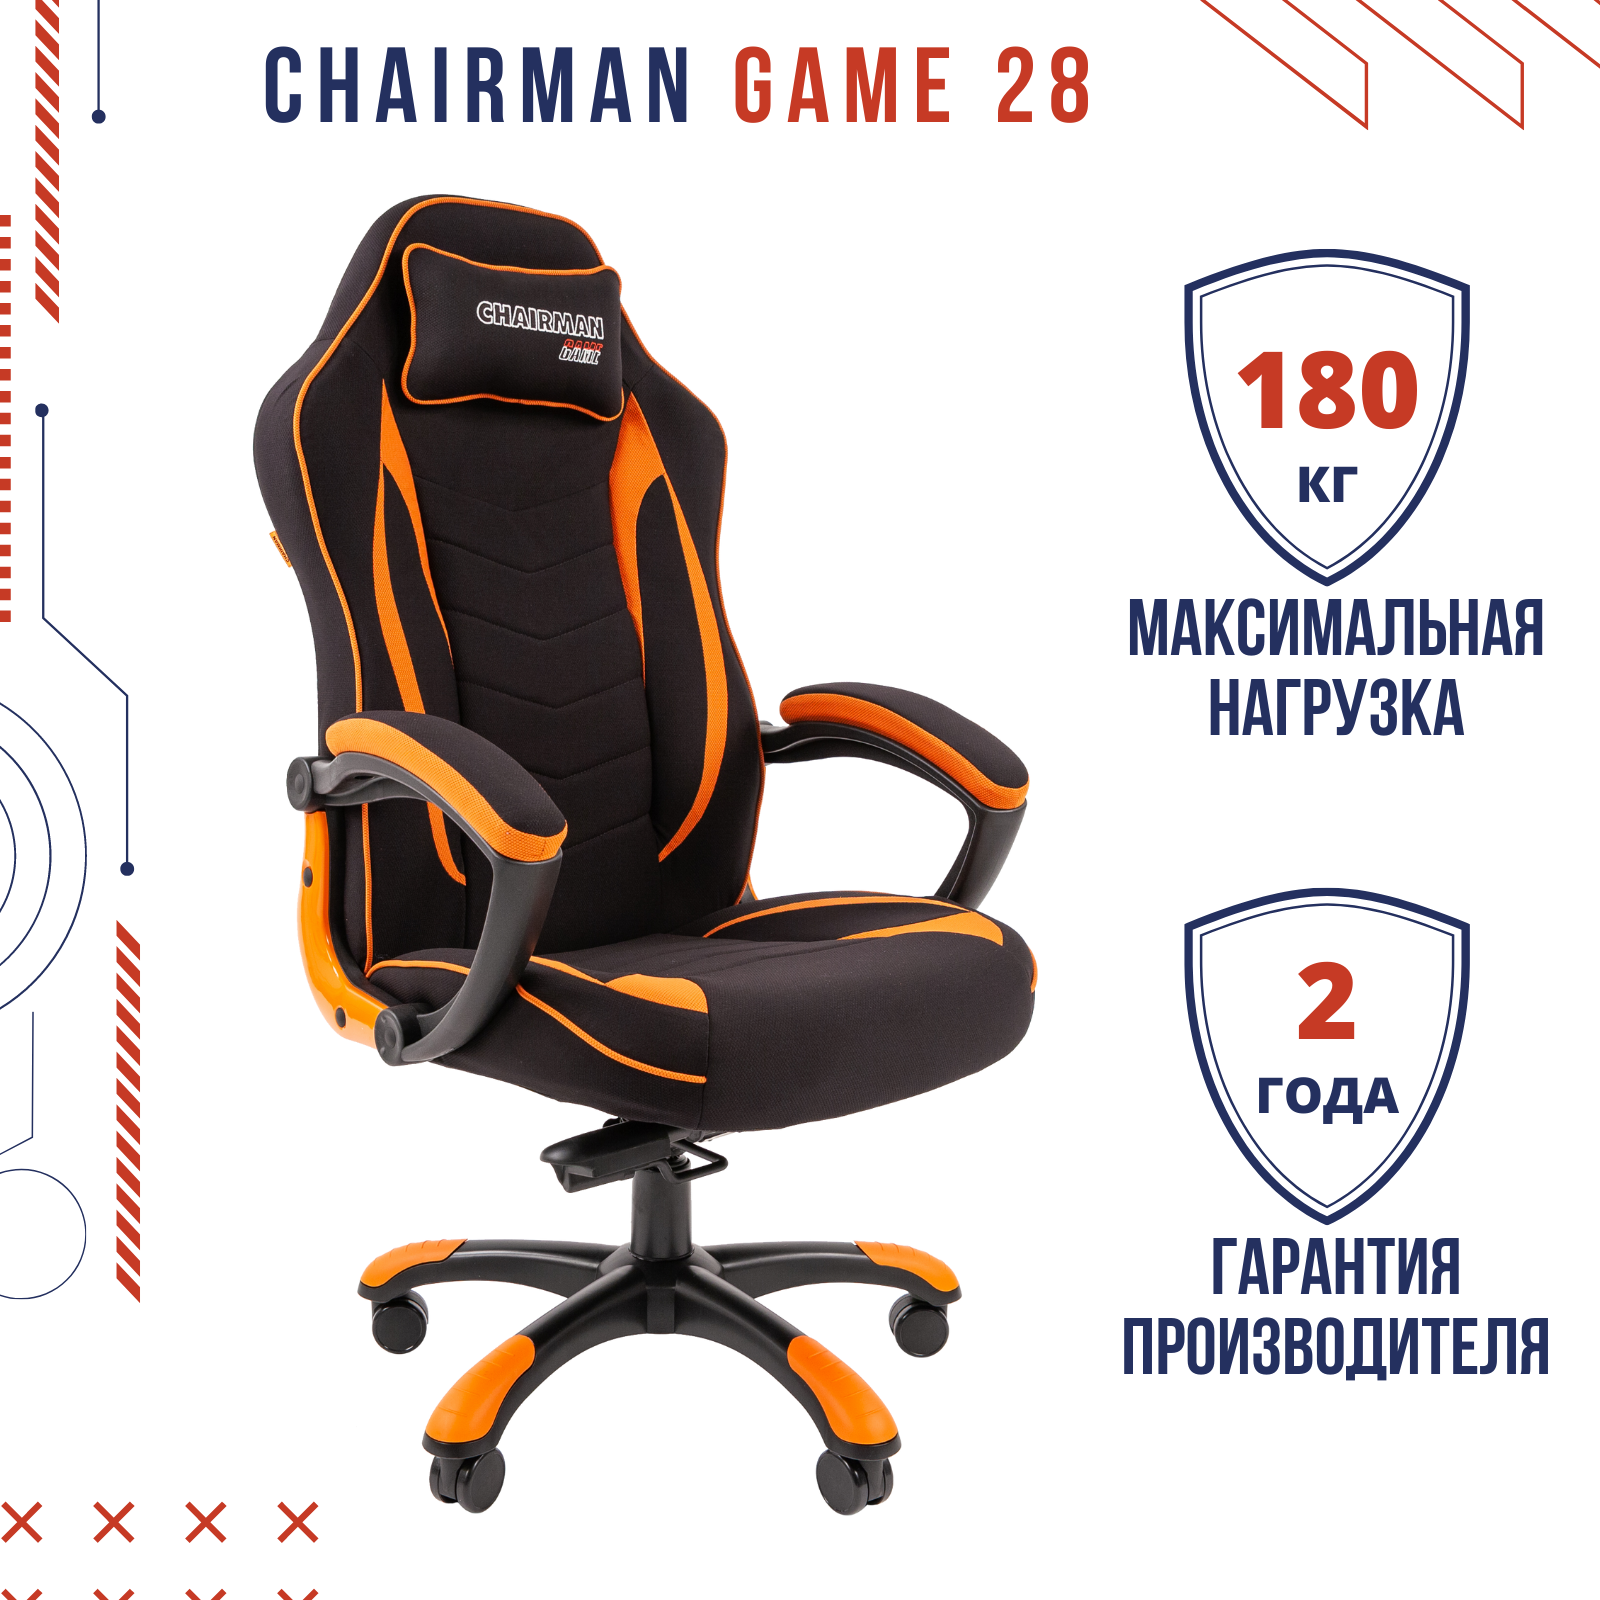 Игровое компьютерное кресло CHAIRMAN GAME 28 с подголовной подушкой, ткань черный, оранжевый, нагрузка до 180 кг.